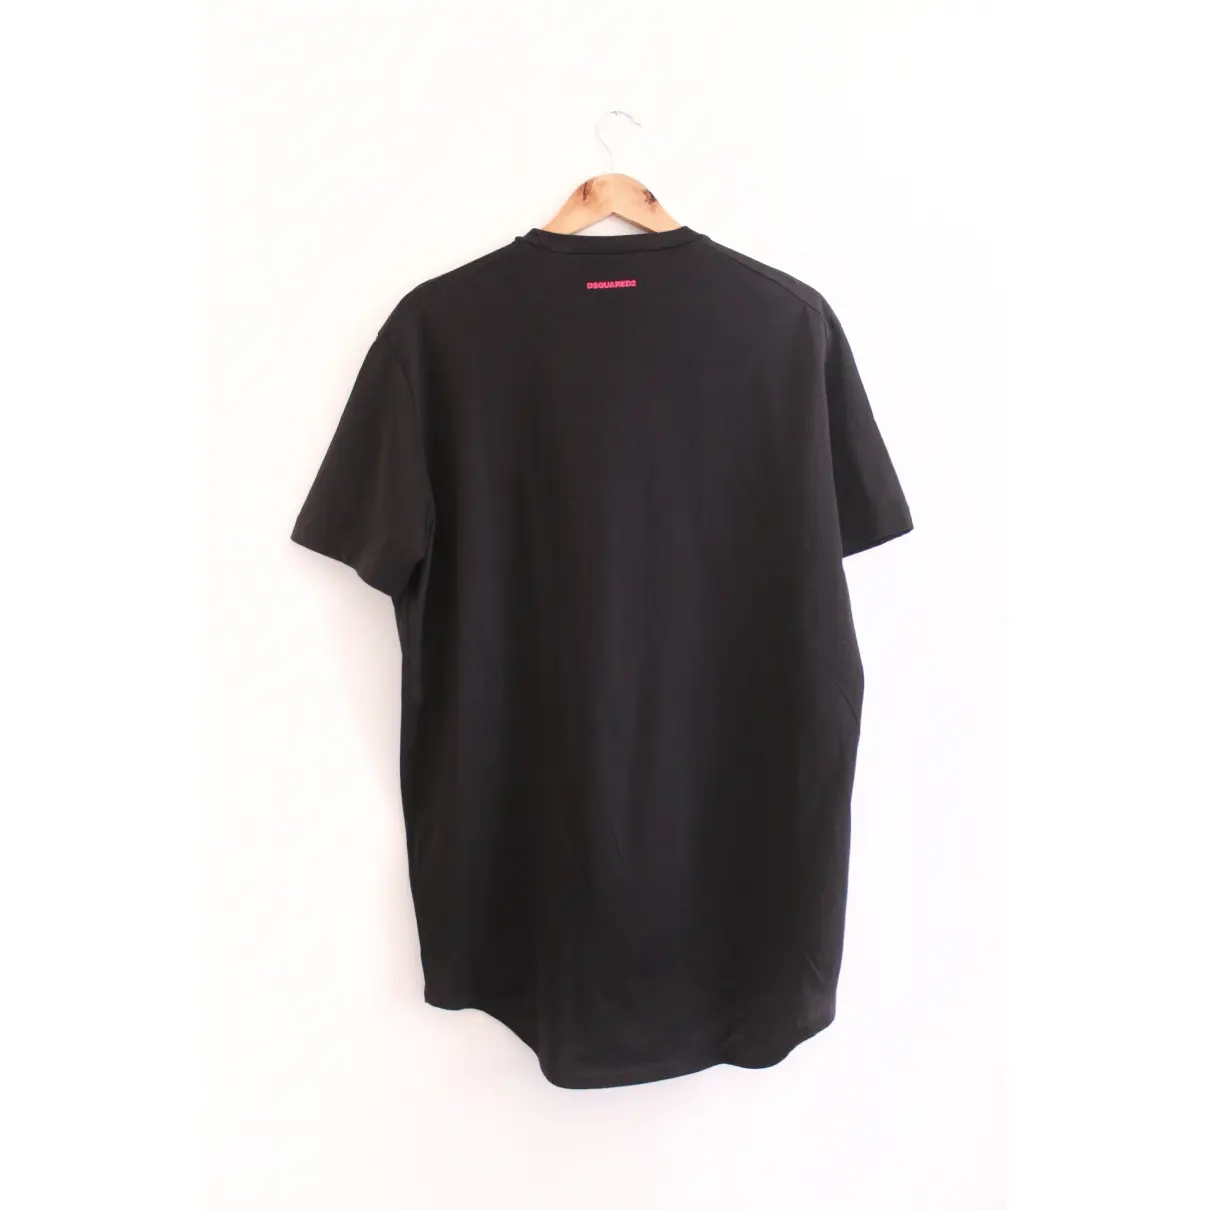 Buy Dsquared2 Black Cotton T-shirt online